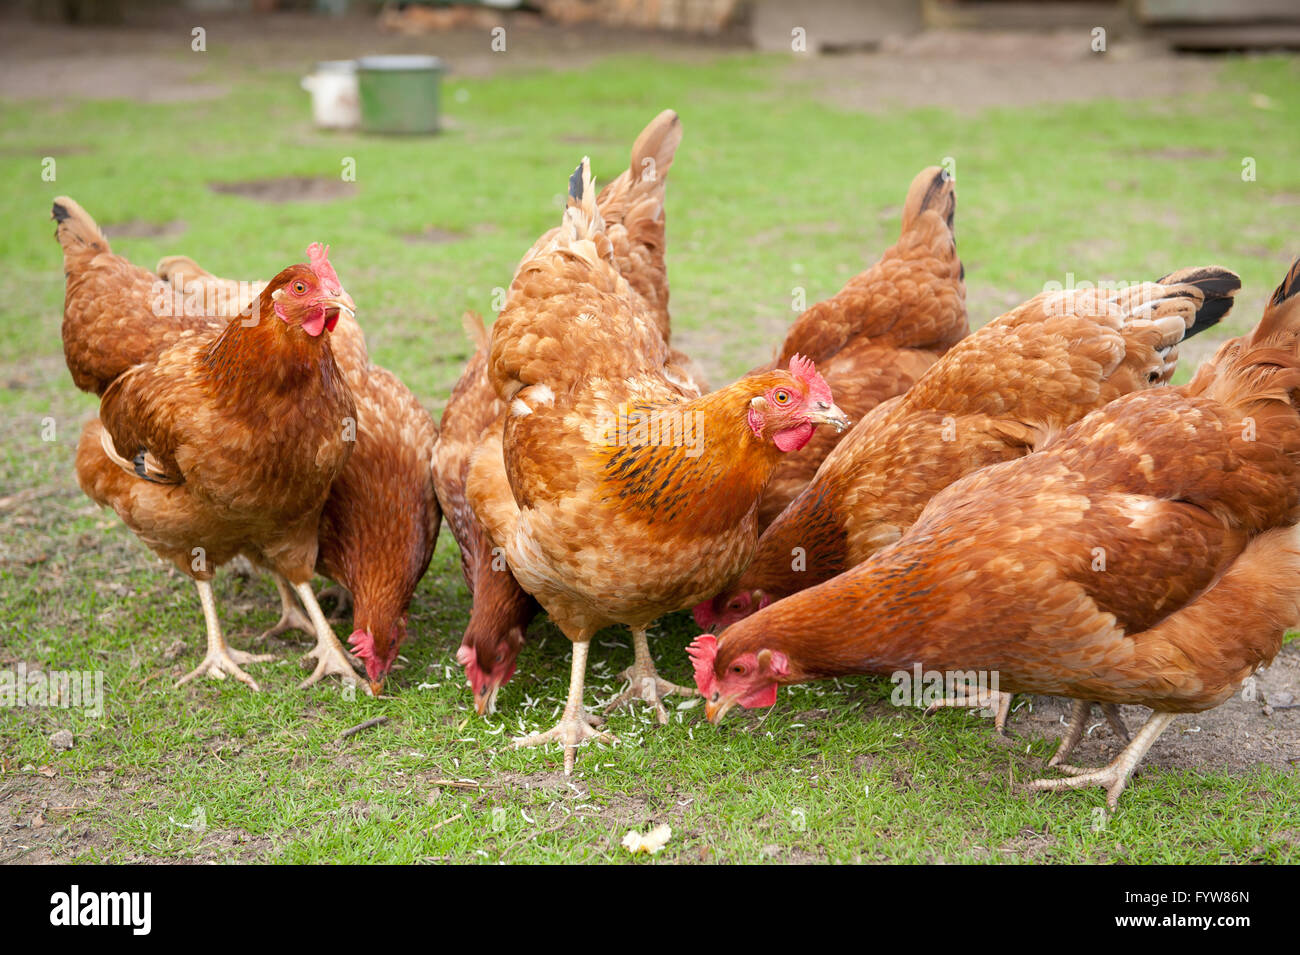 Hühner-Herde essen Nudeln, Rhode Island Red Hens mit braunem Gefieder, Vögel Essen im privaten Garten, ruhig Hausgeflügel. Stockfoto